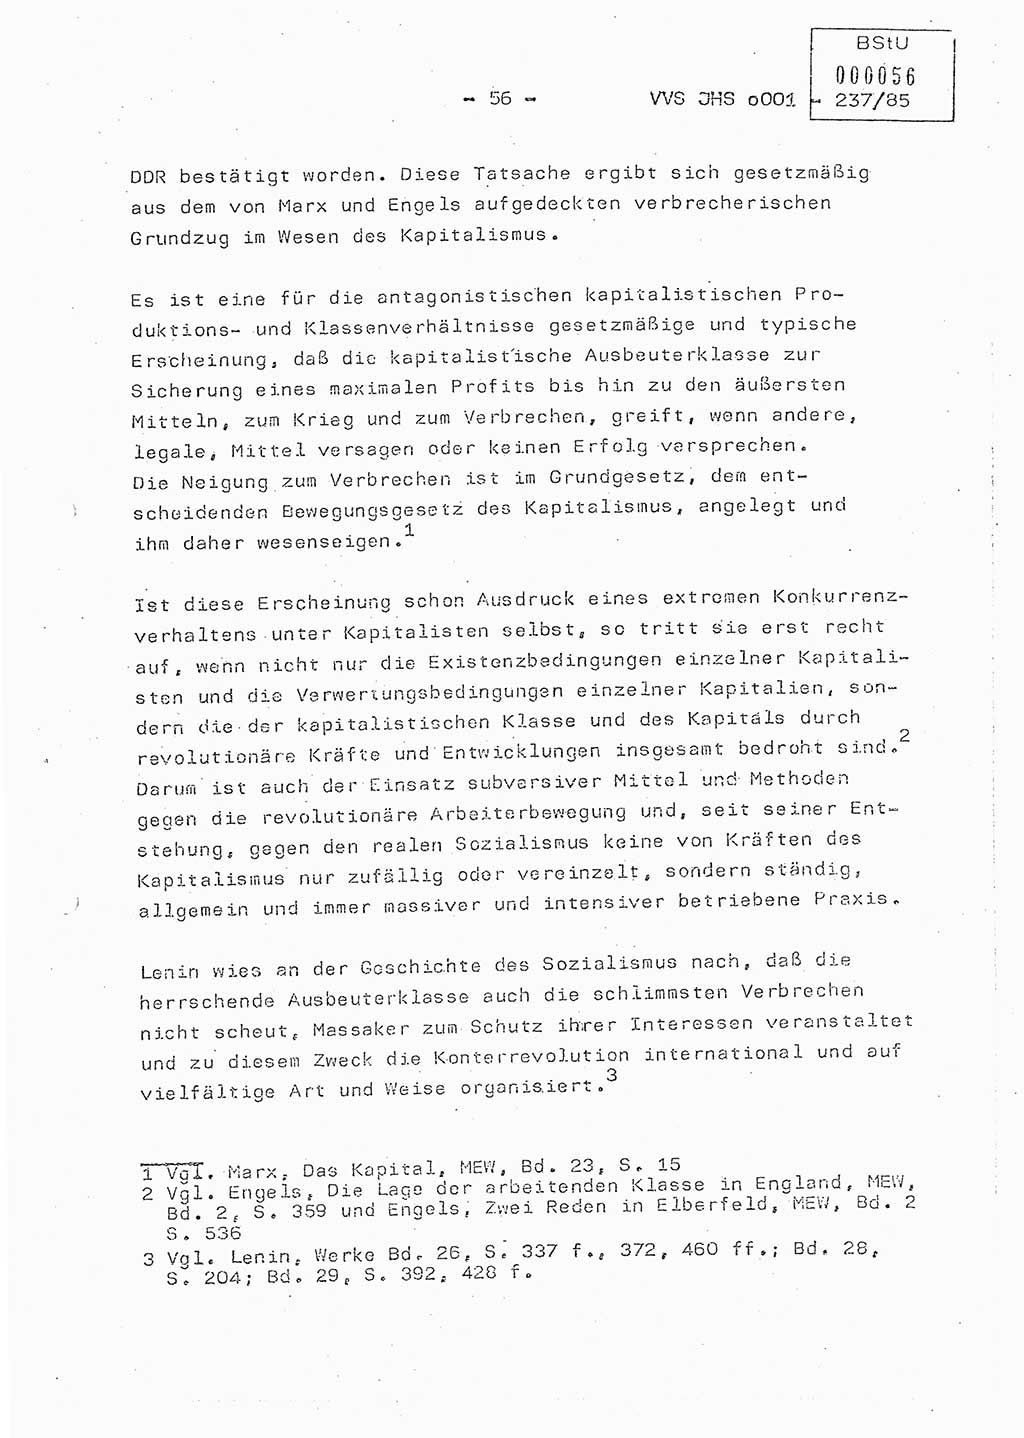 Dissertation Oberstleutnant Peter Jakulski (JHS), Oberstleutnat Christian Rudolph (HA Ⅸ), Major Horst Böttger (ZMD), Major Wolfgang Grüneberg (JHS), Major Albert Meutsch (JHS), Ministerium für Staatssicherheit (MfS) [Deutsche Demokratische Republik (DDR)], Juristische Hochschule (JHS), Vertrauliche Verschlußsache (VVS) o001-237/85, Potsdam 1985, Seite 56 (Diss. MfS DDR JHS VVS o001-237/85 1985, S. 56)